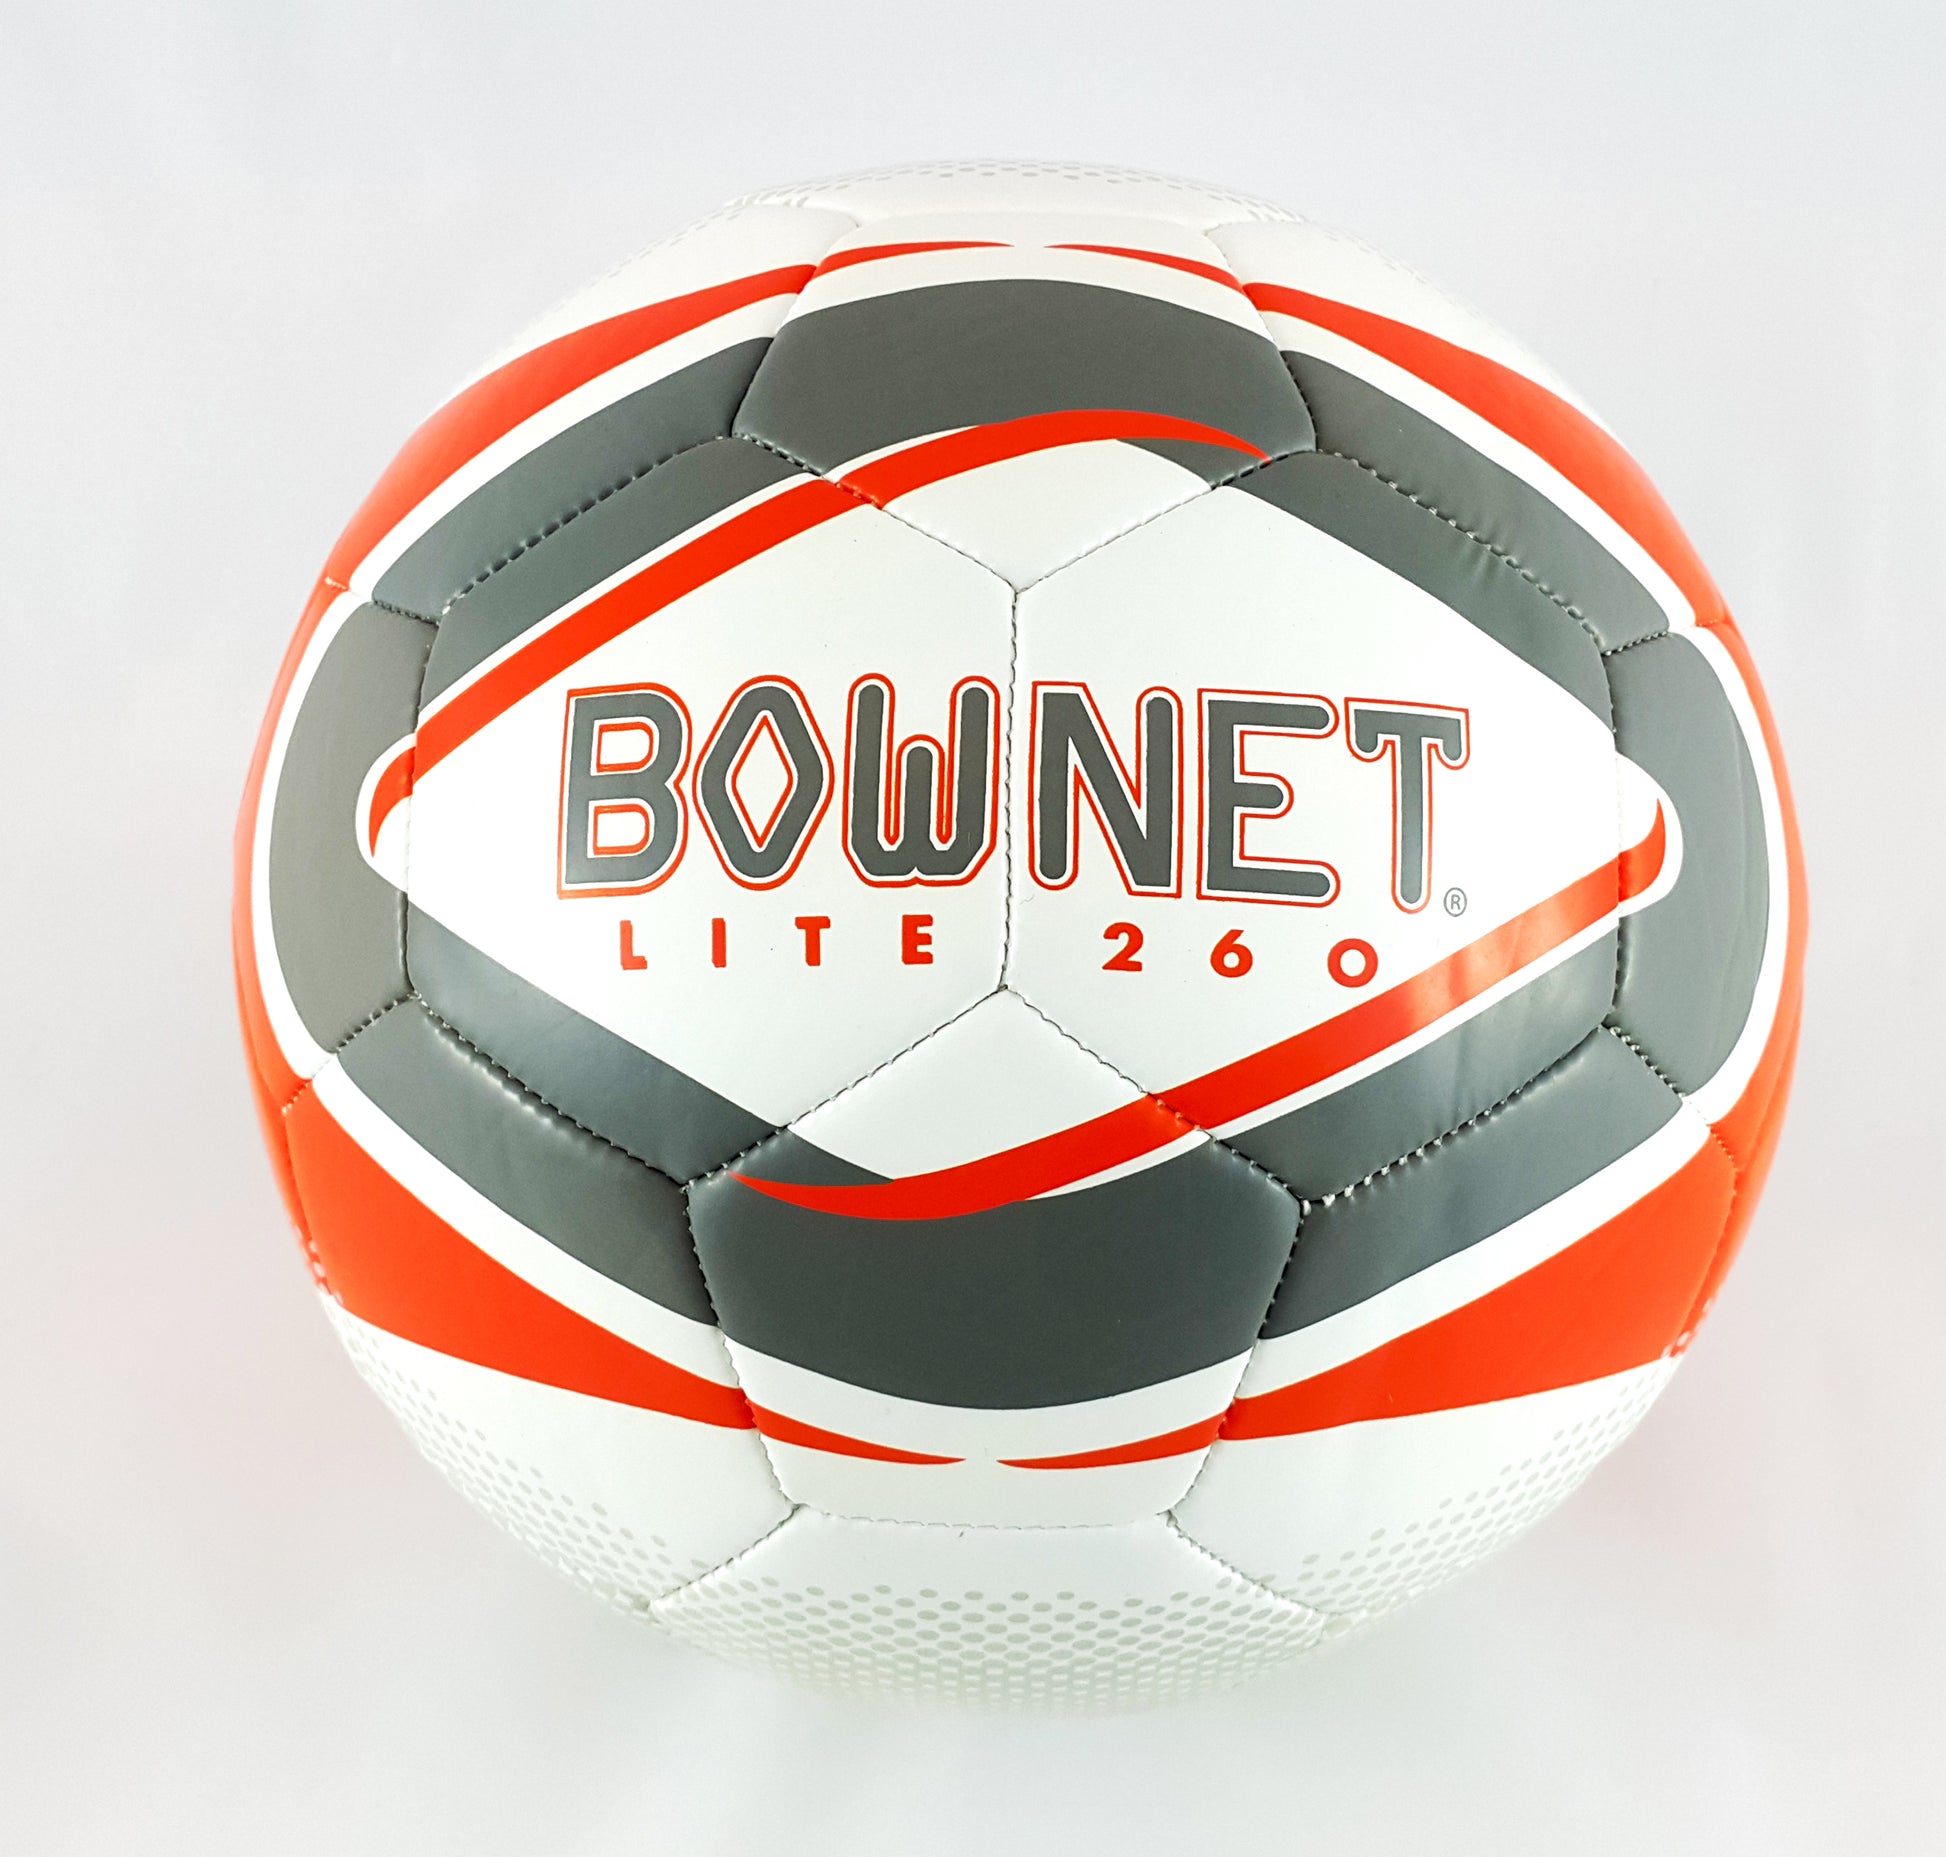 Bownet Soccer Lite Soccer Ball Size 3 - LITE260 Ball